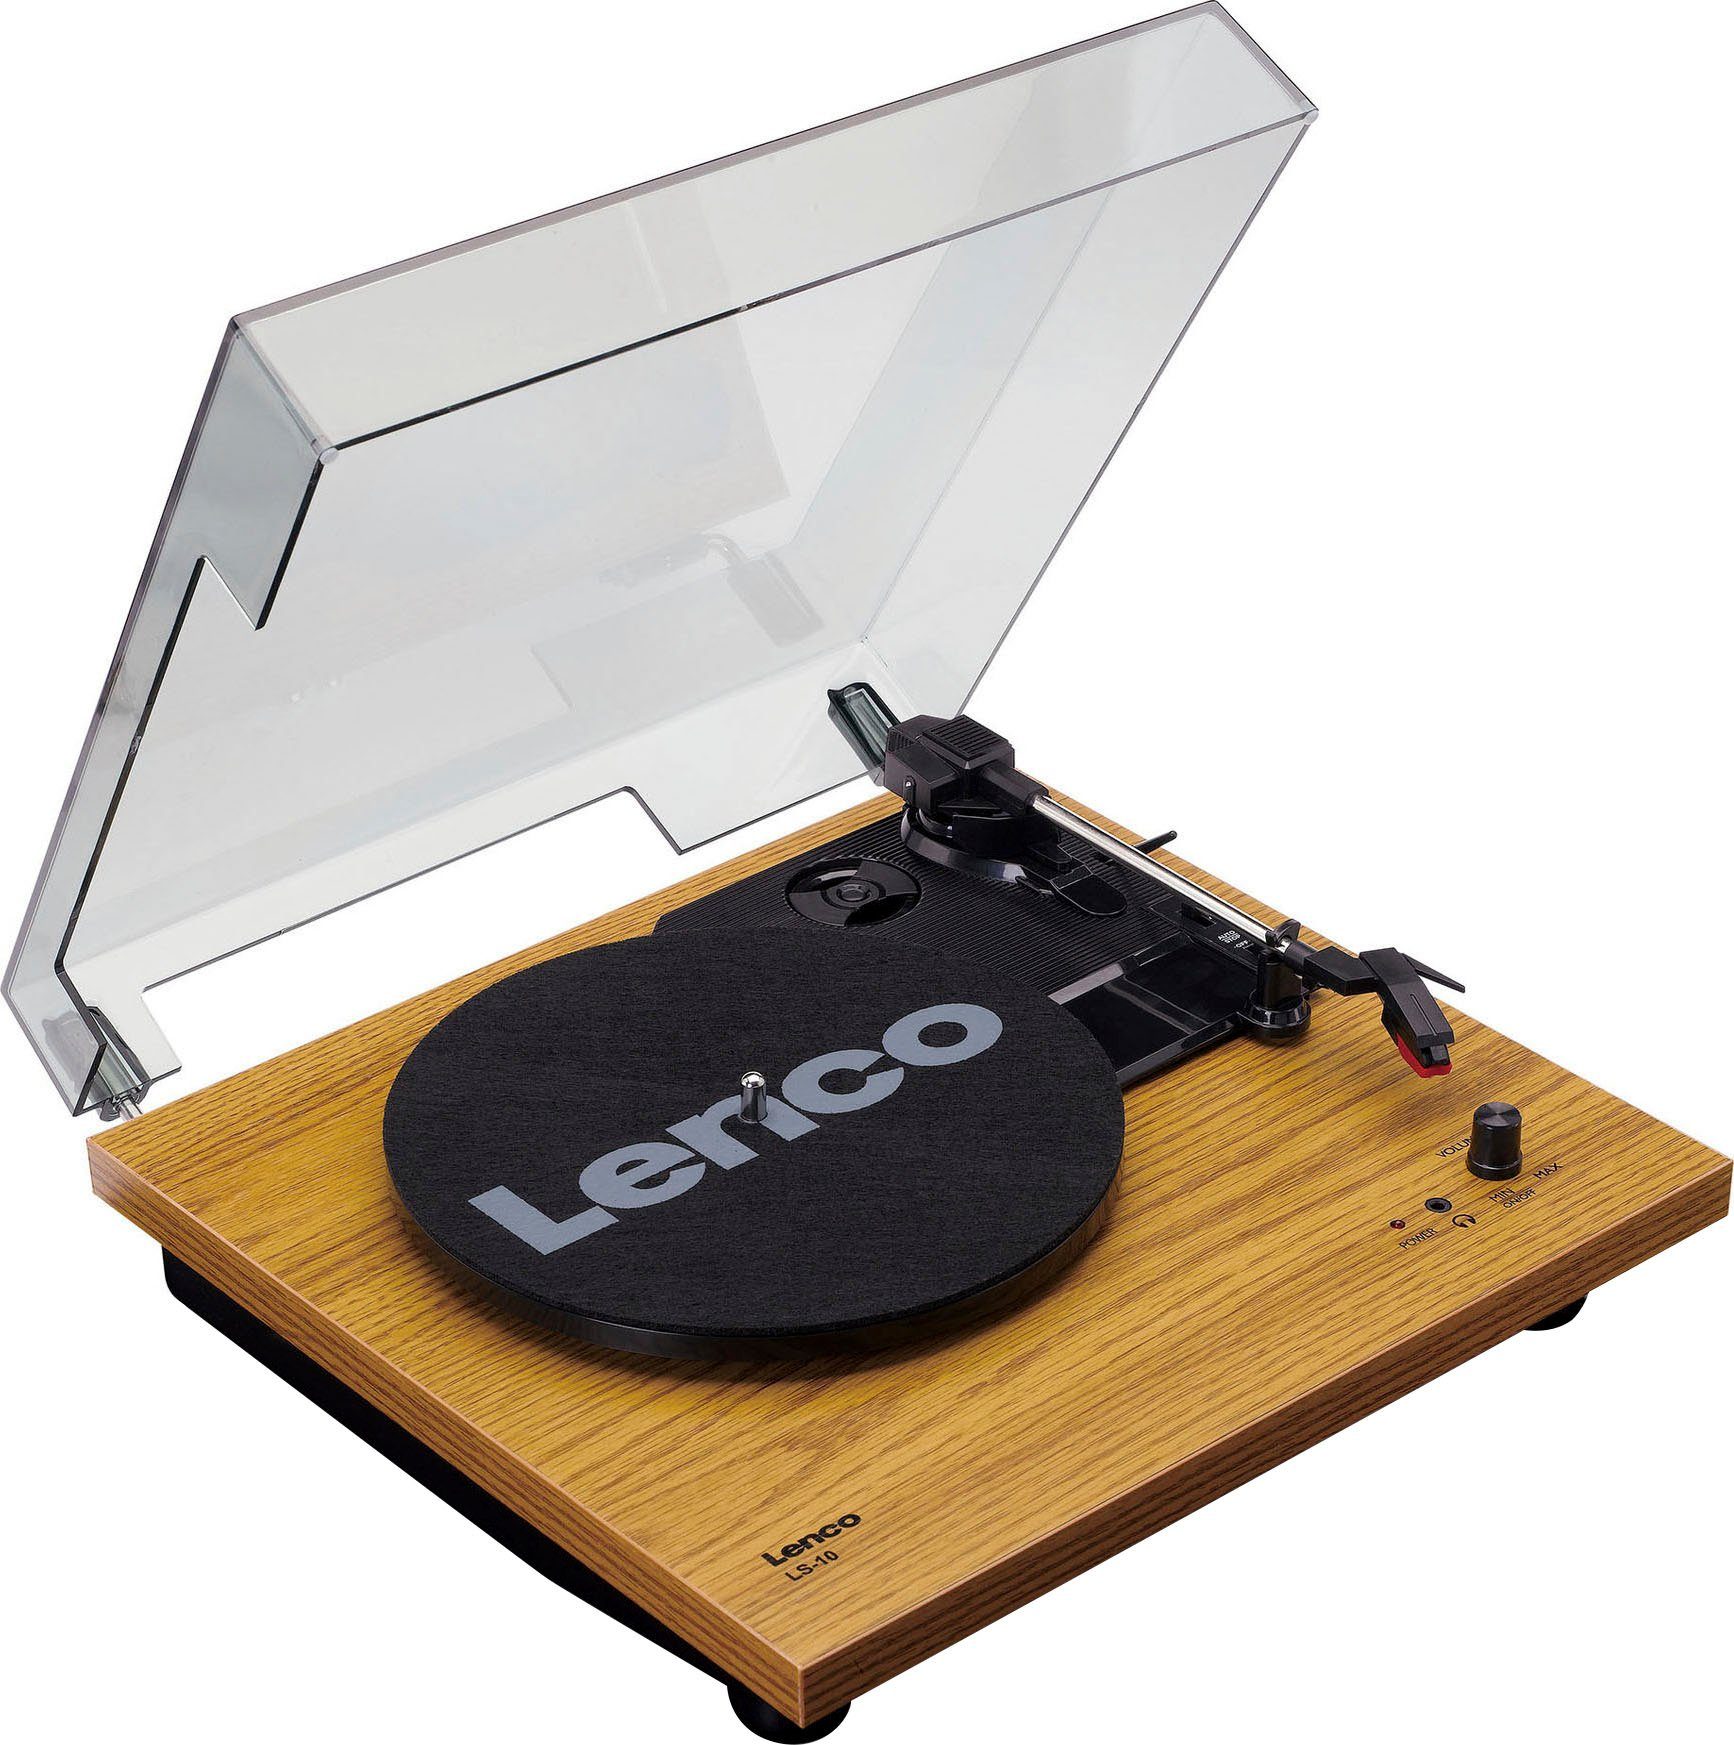 (Riemenantrieb) (Weiß/Holz) Plattenspieler Lenco Lautsprechern mit Plattenspieler LS-10WD